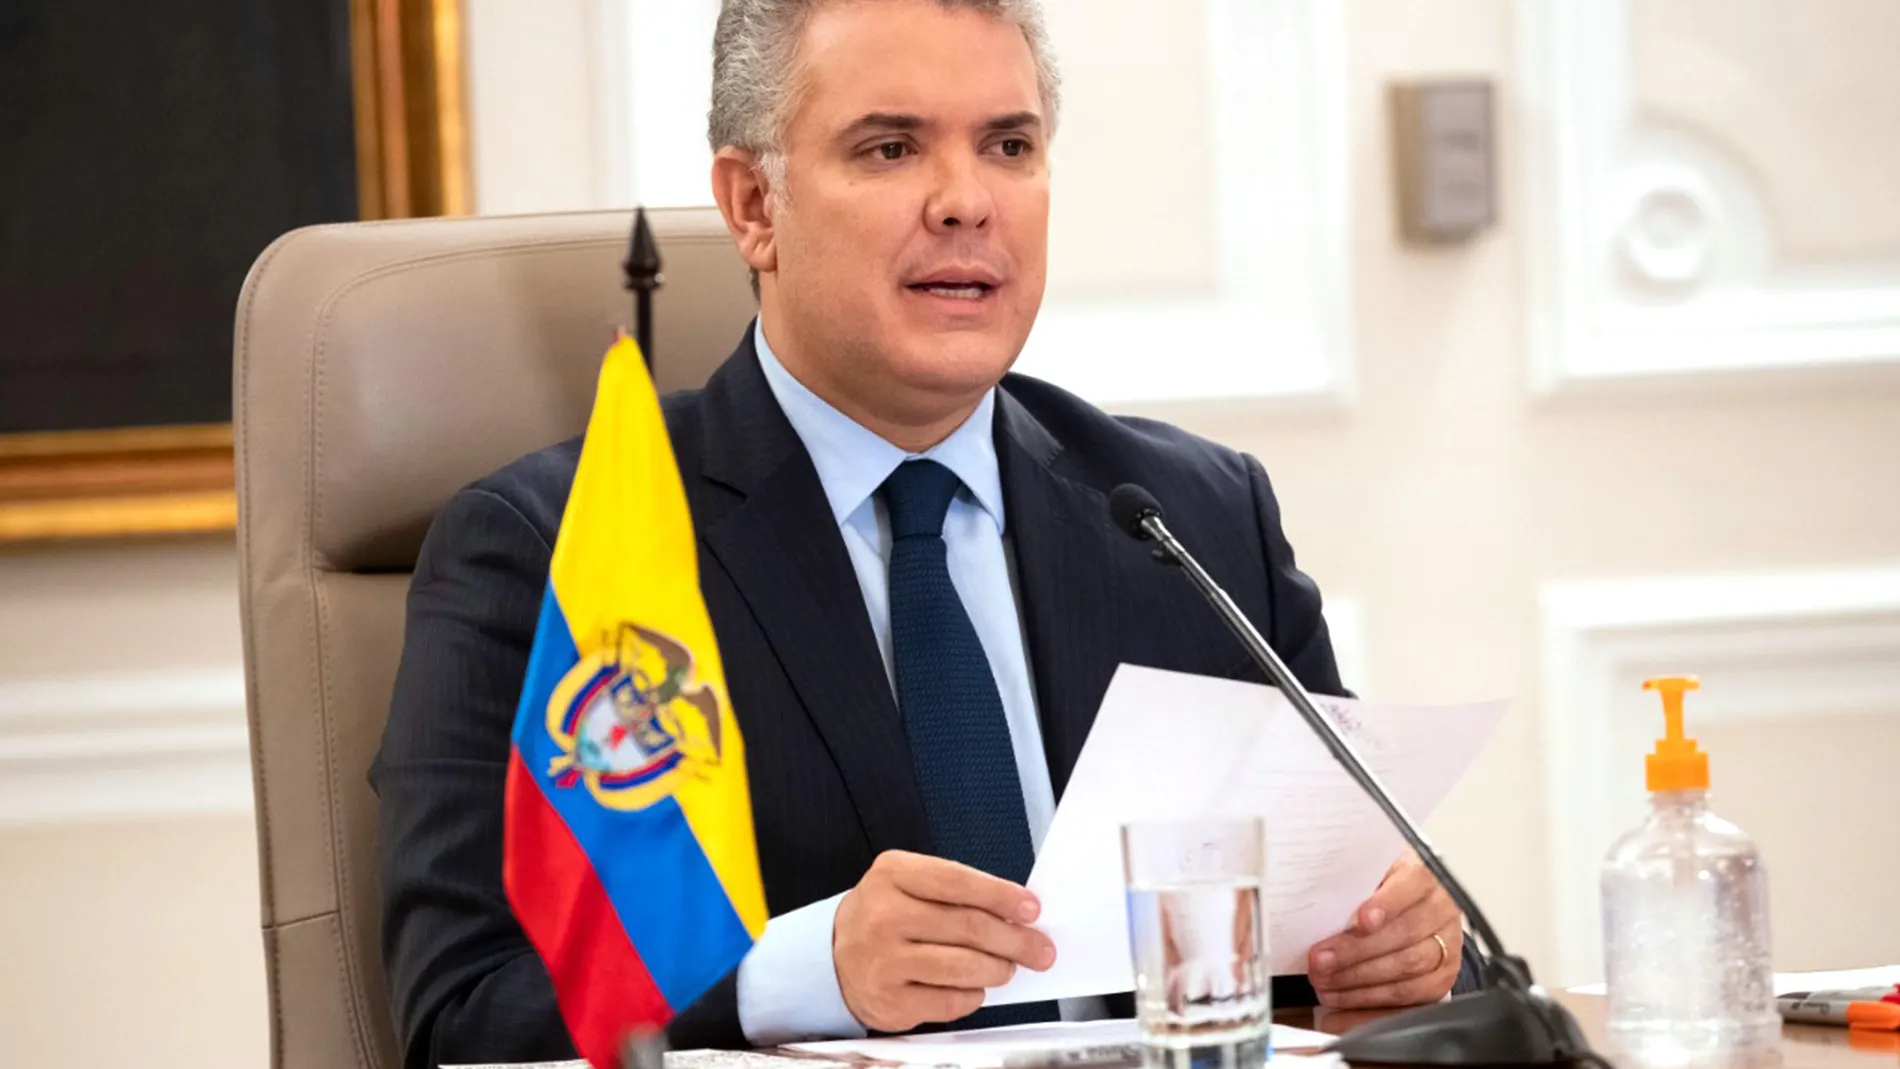 Colombian President Ivan Duque speaking in Bogota